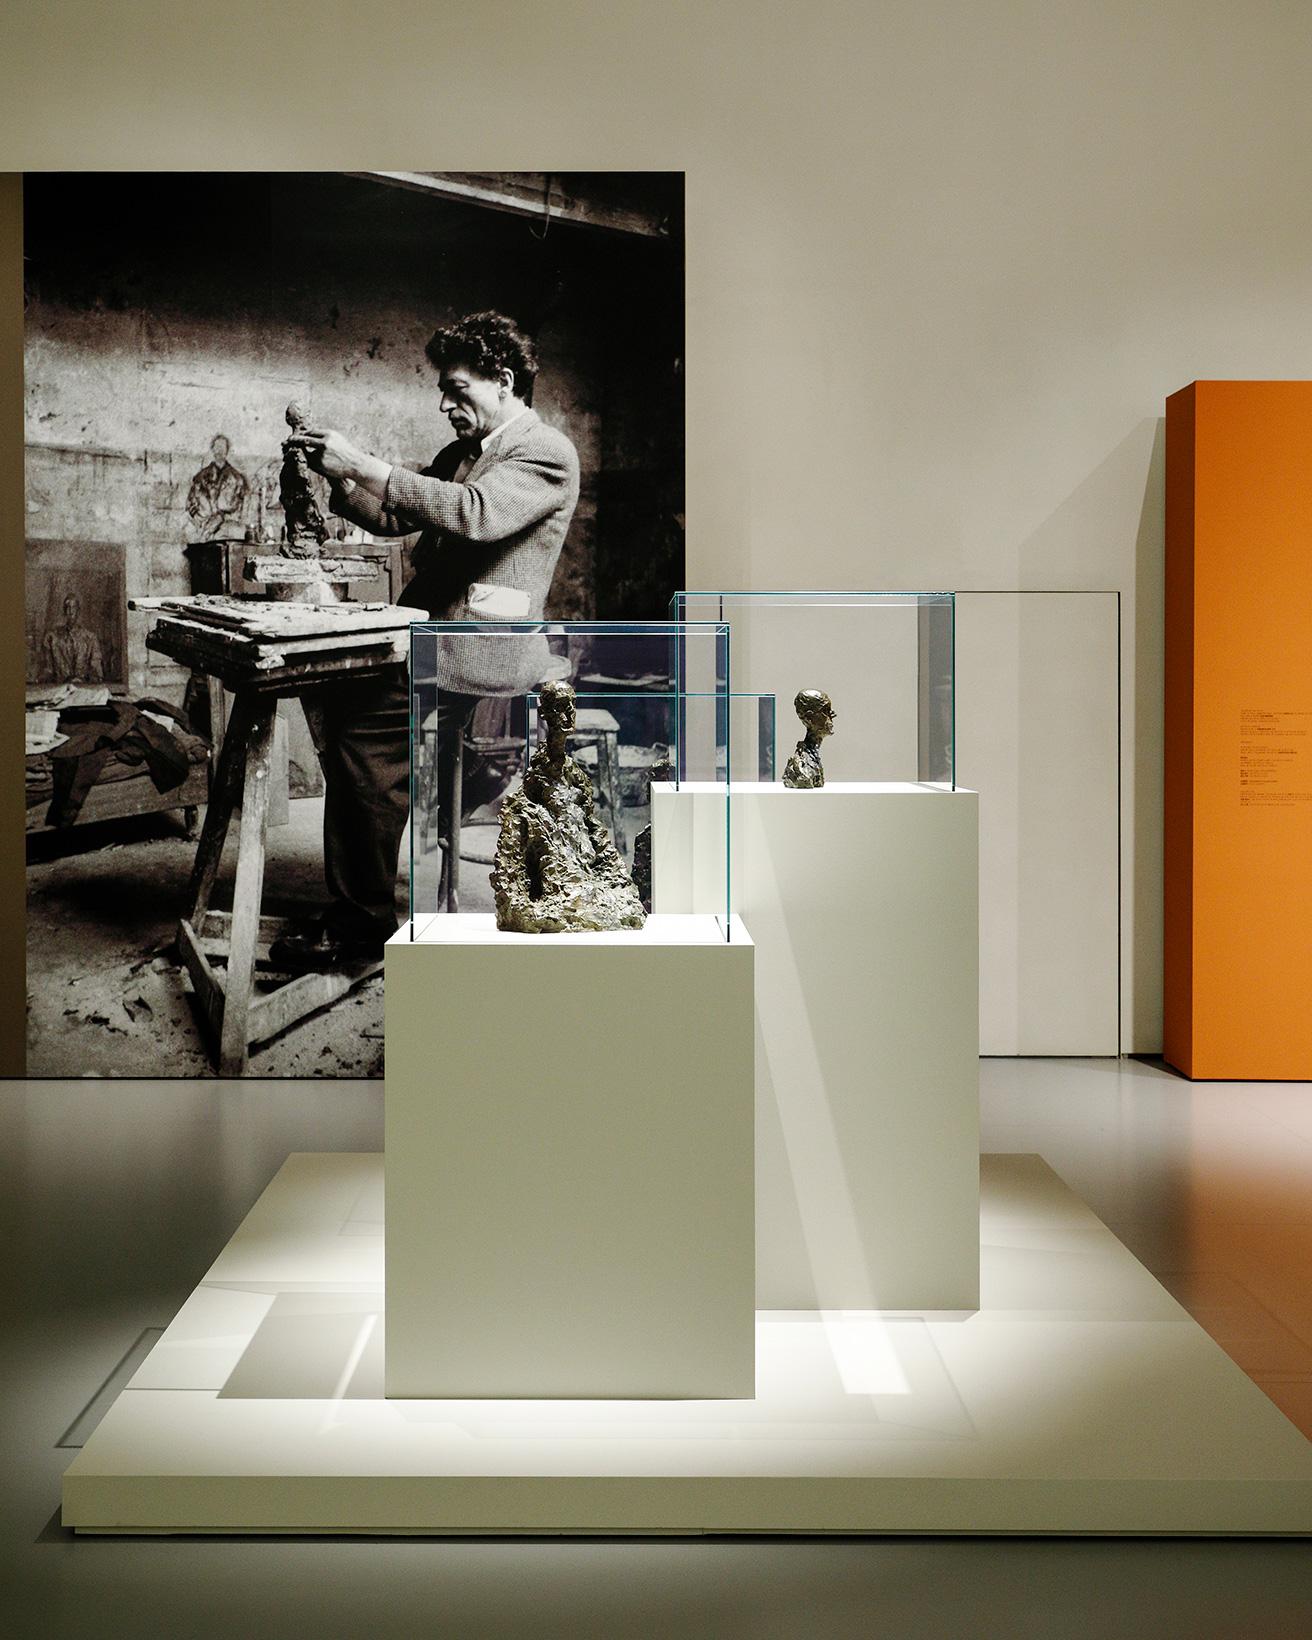 奥に見えるのは1954年に撮影された、パリのアトリエにいるアルベルト・ジャコメッティ。展示された彫刻作品は、まるでアトリエから抜け出してきたようにも見える。